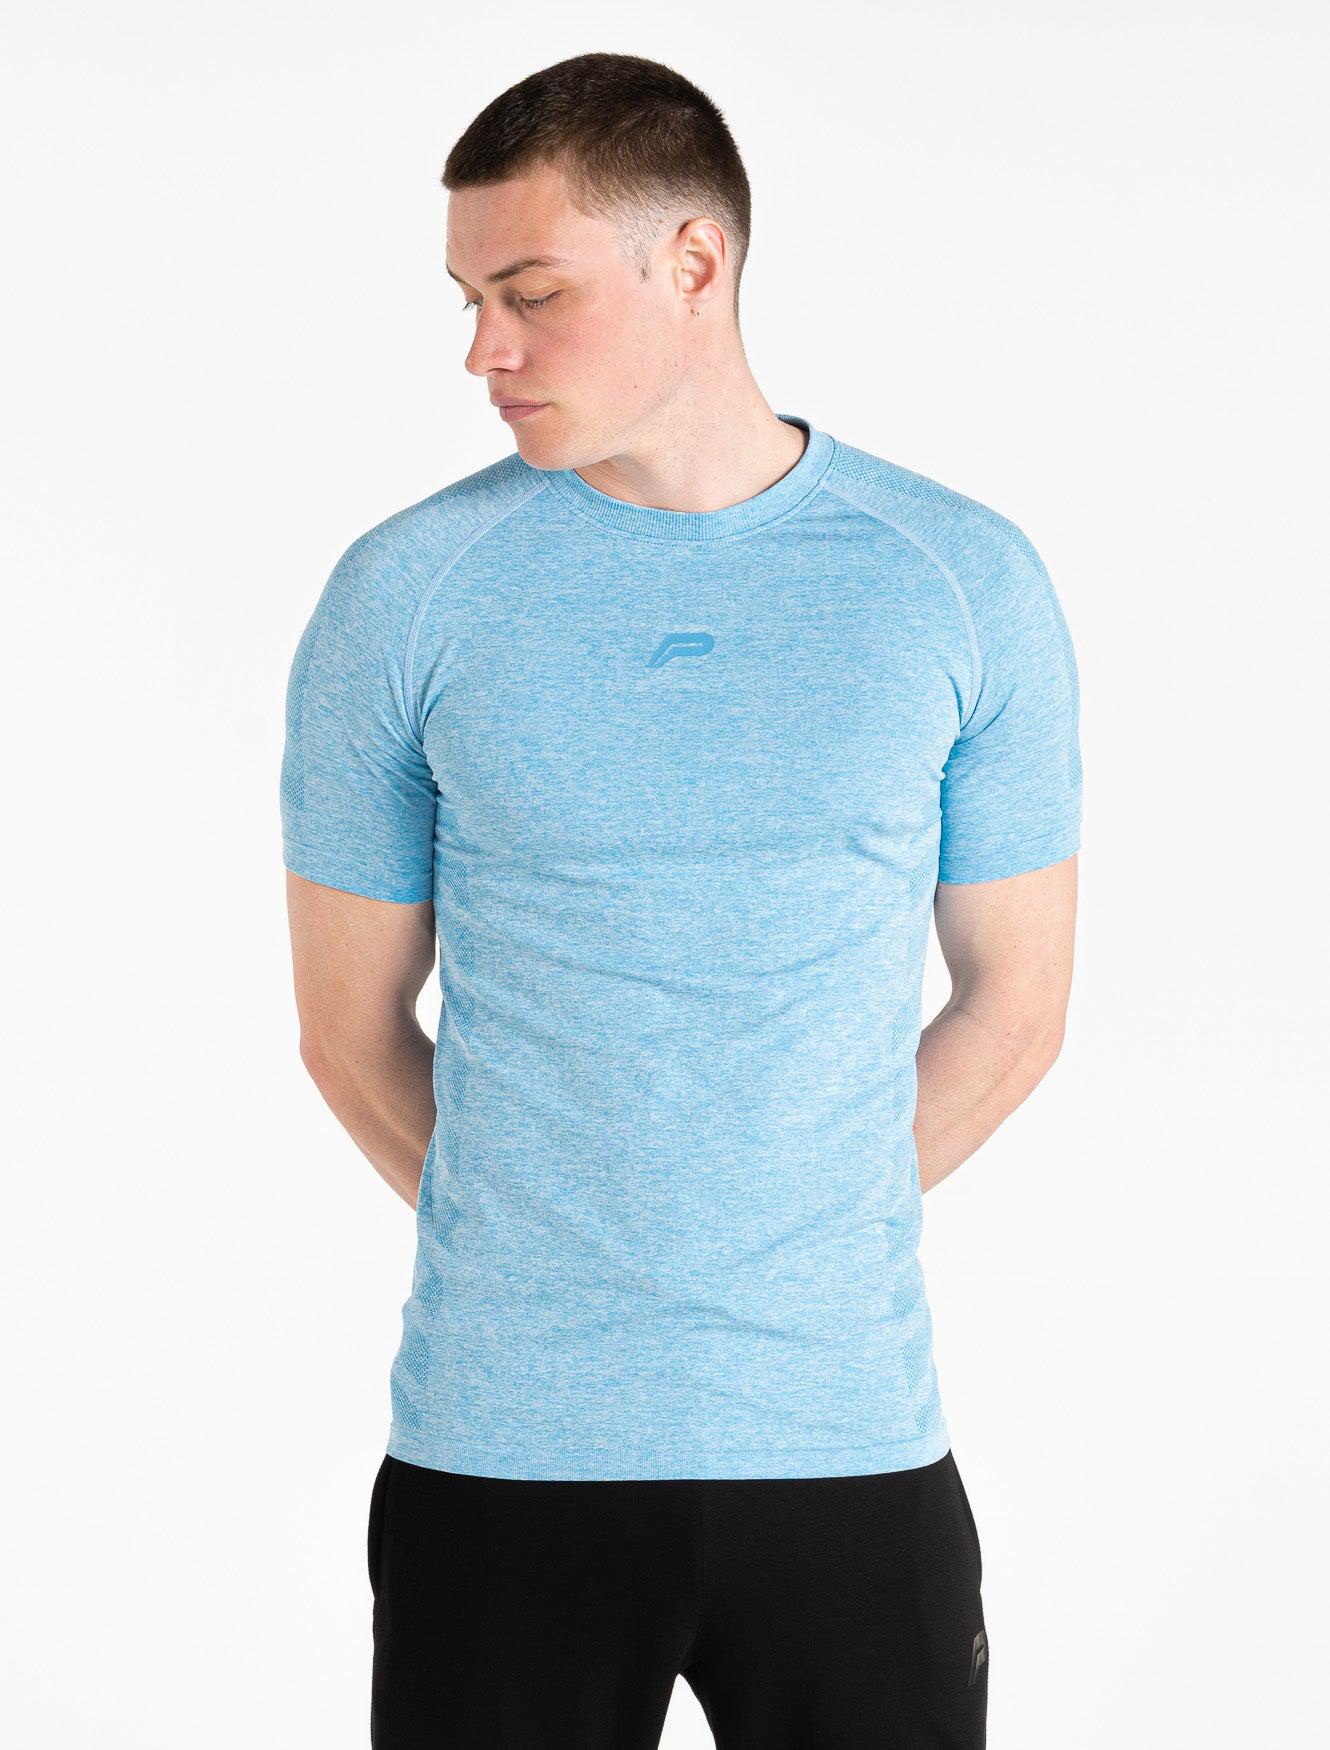 Intensity Seamless T-shirt / Blue Marl Pursue Fitness 1